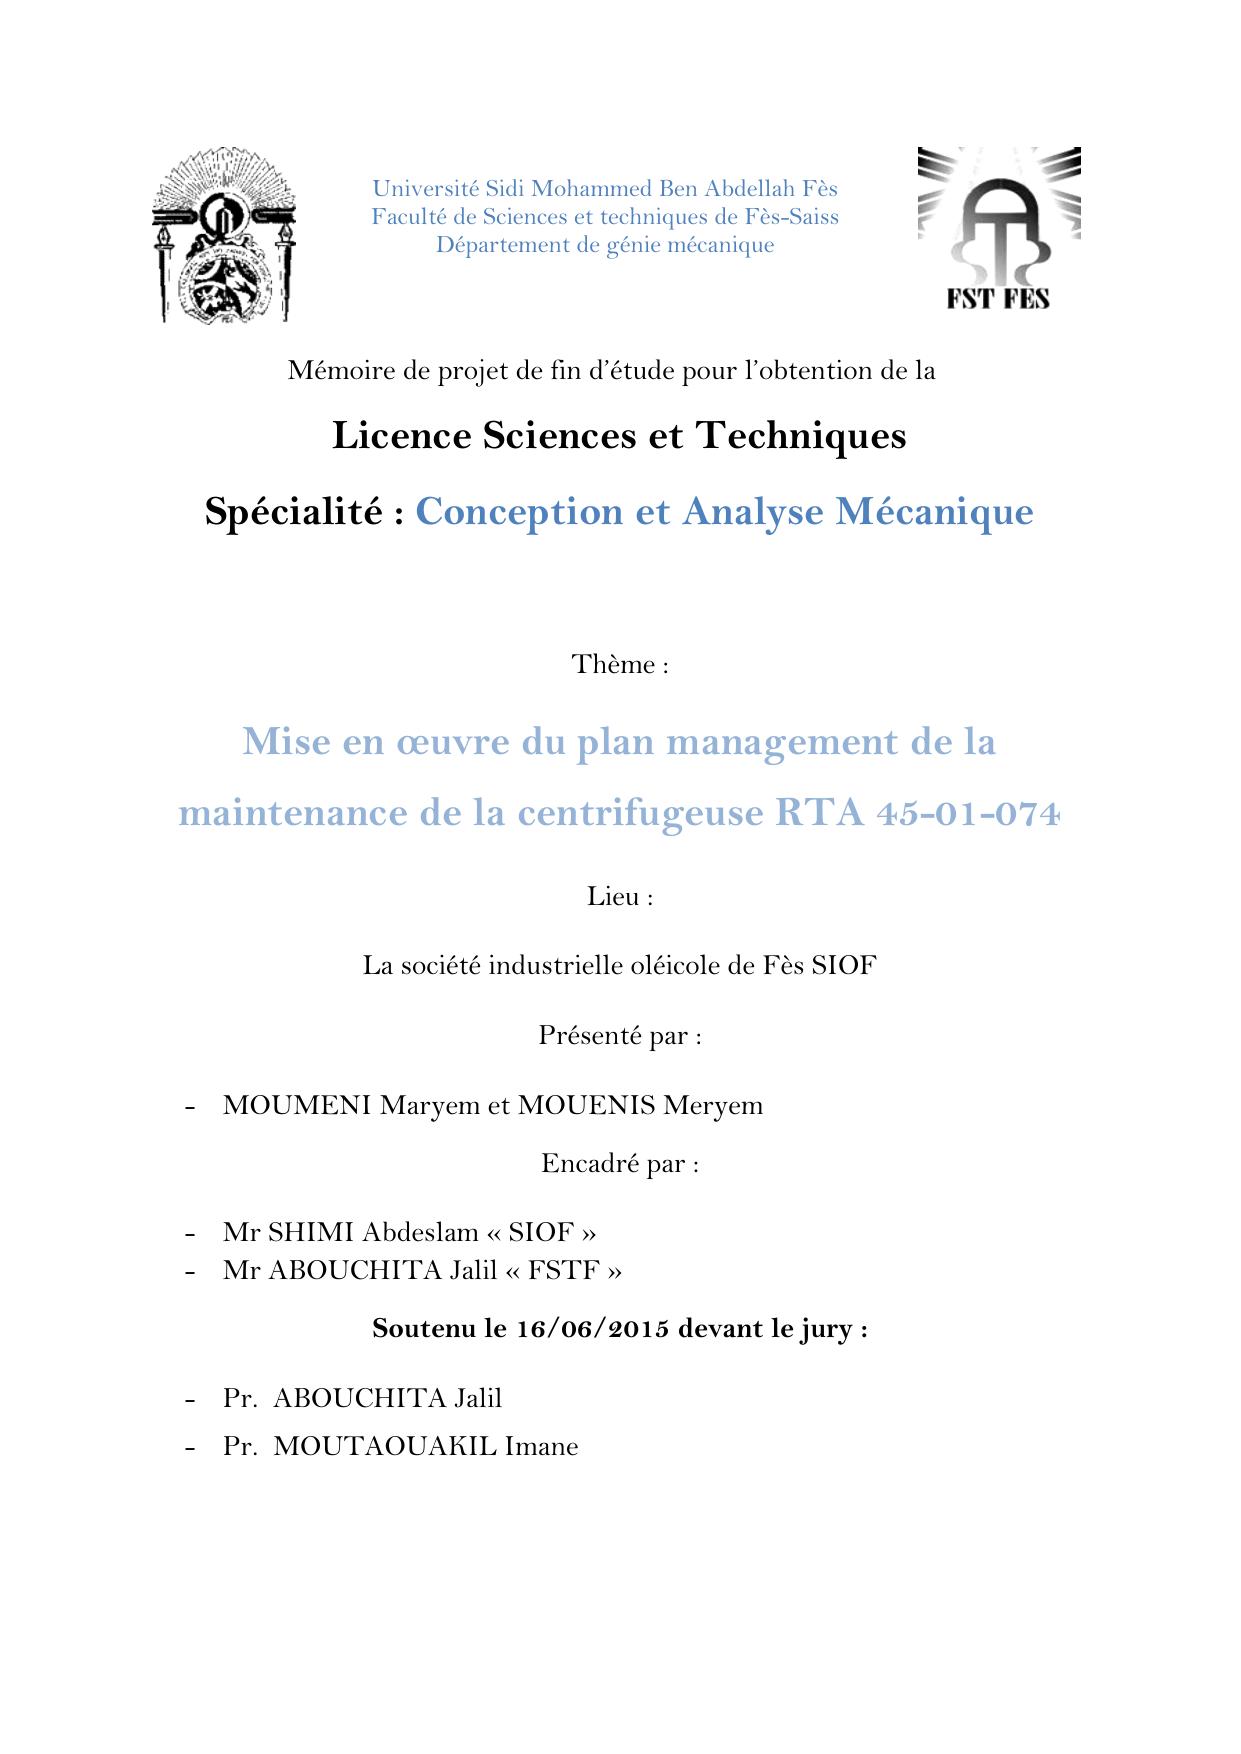 Mise en oeuvre du plan management de la maintenance de la centrifugeuse RTA 45-01-074